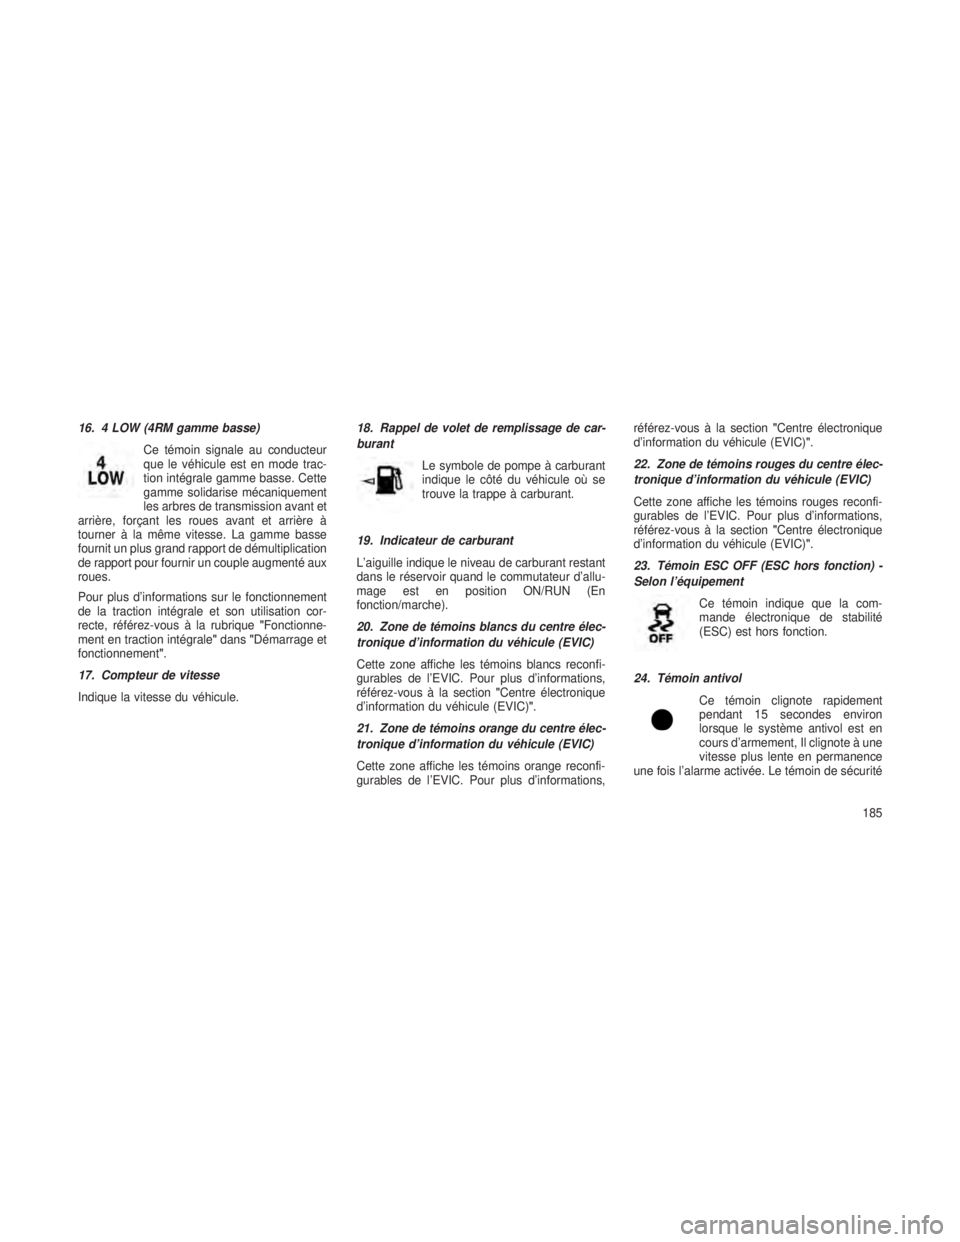 JEEP GRAND CHEROKEE 2013  Notice dentretien (in French) 16. 4 LOW (4RM gamme basse)Ce témoin signale au conducteur
que le véhicule est en mode trac-
tion intégrale gamme basse. Cette
gamme solidarise mécaniquement
les arbres de transmission avant et
ar